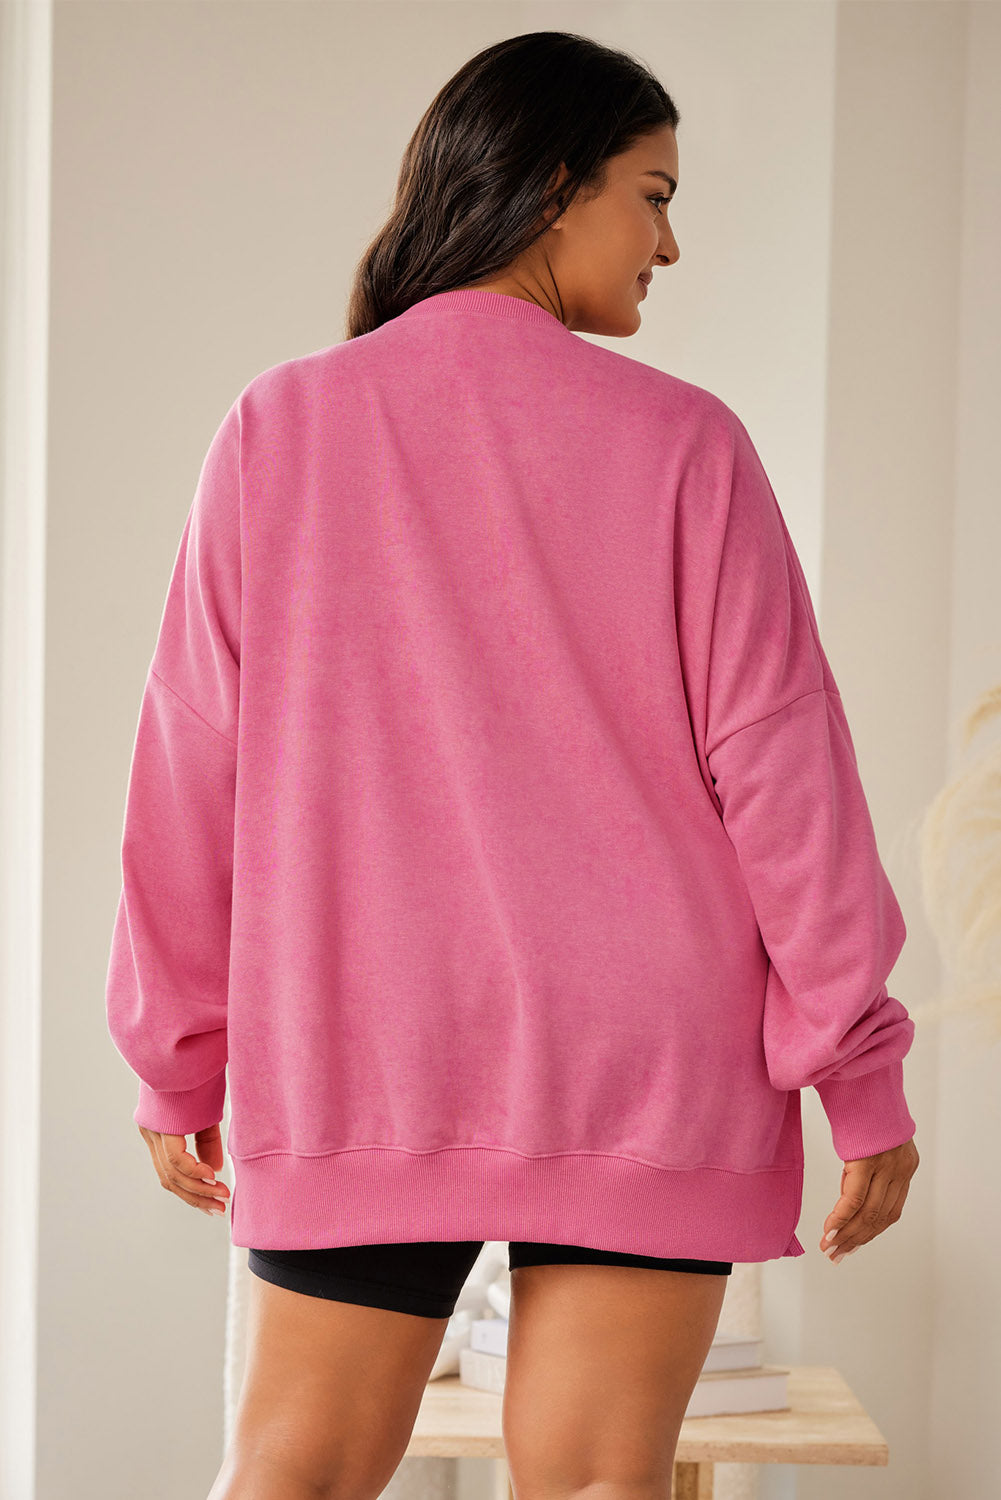 Ružičasta majica veće veličine s rebrastim obrubom spuštenih ramena